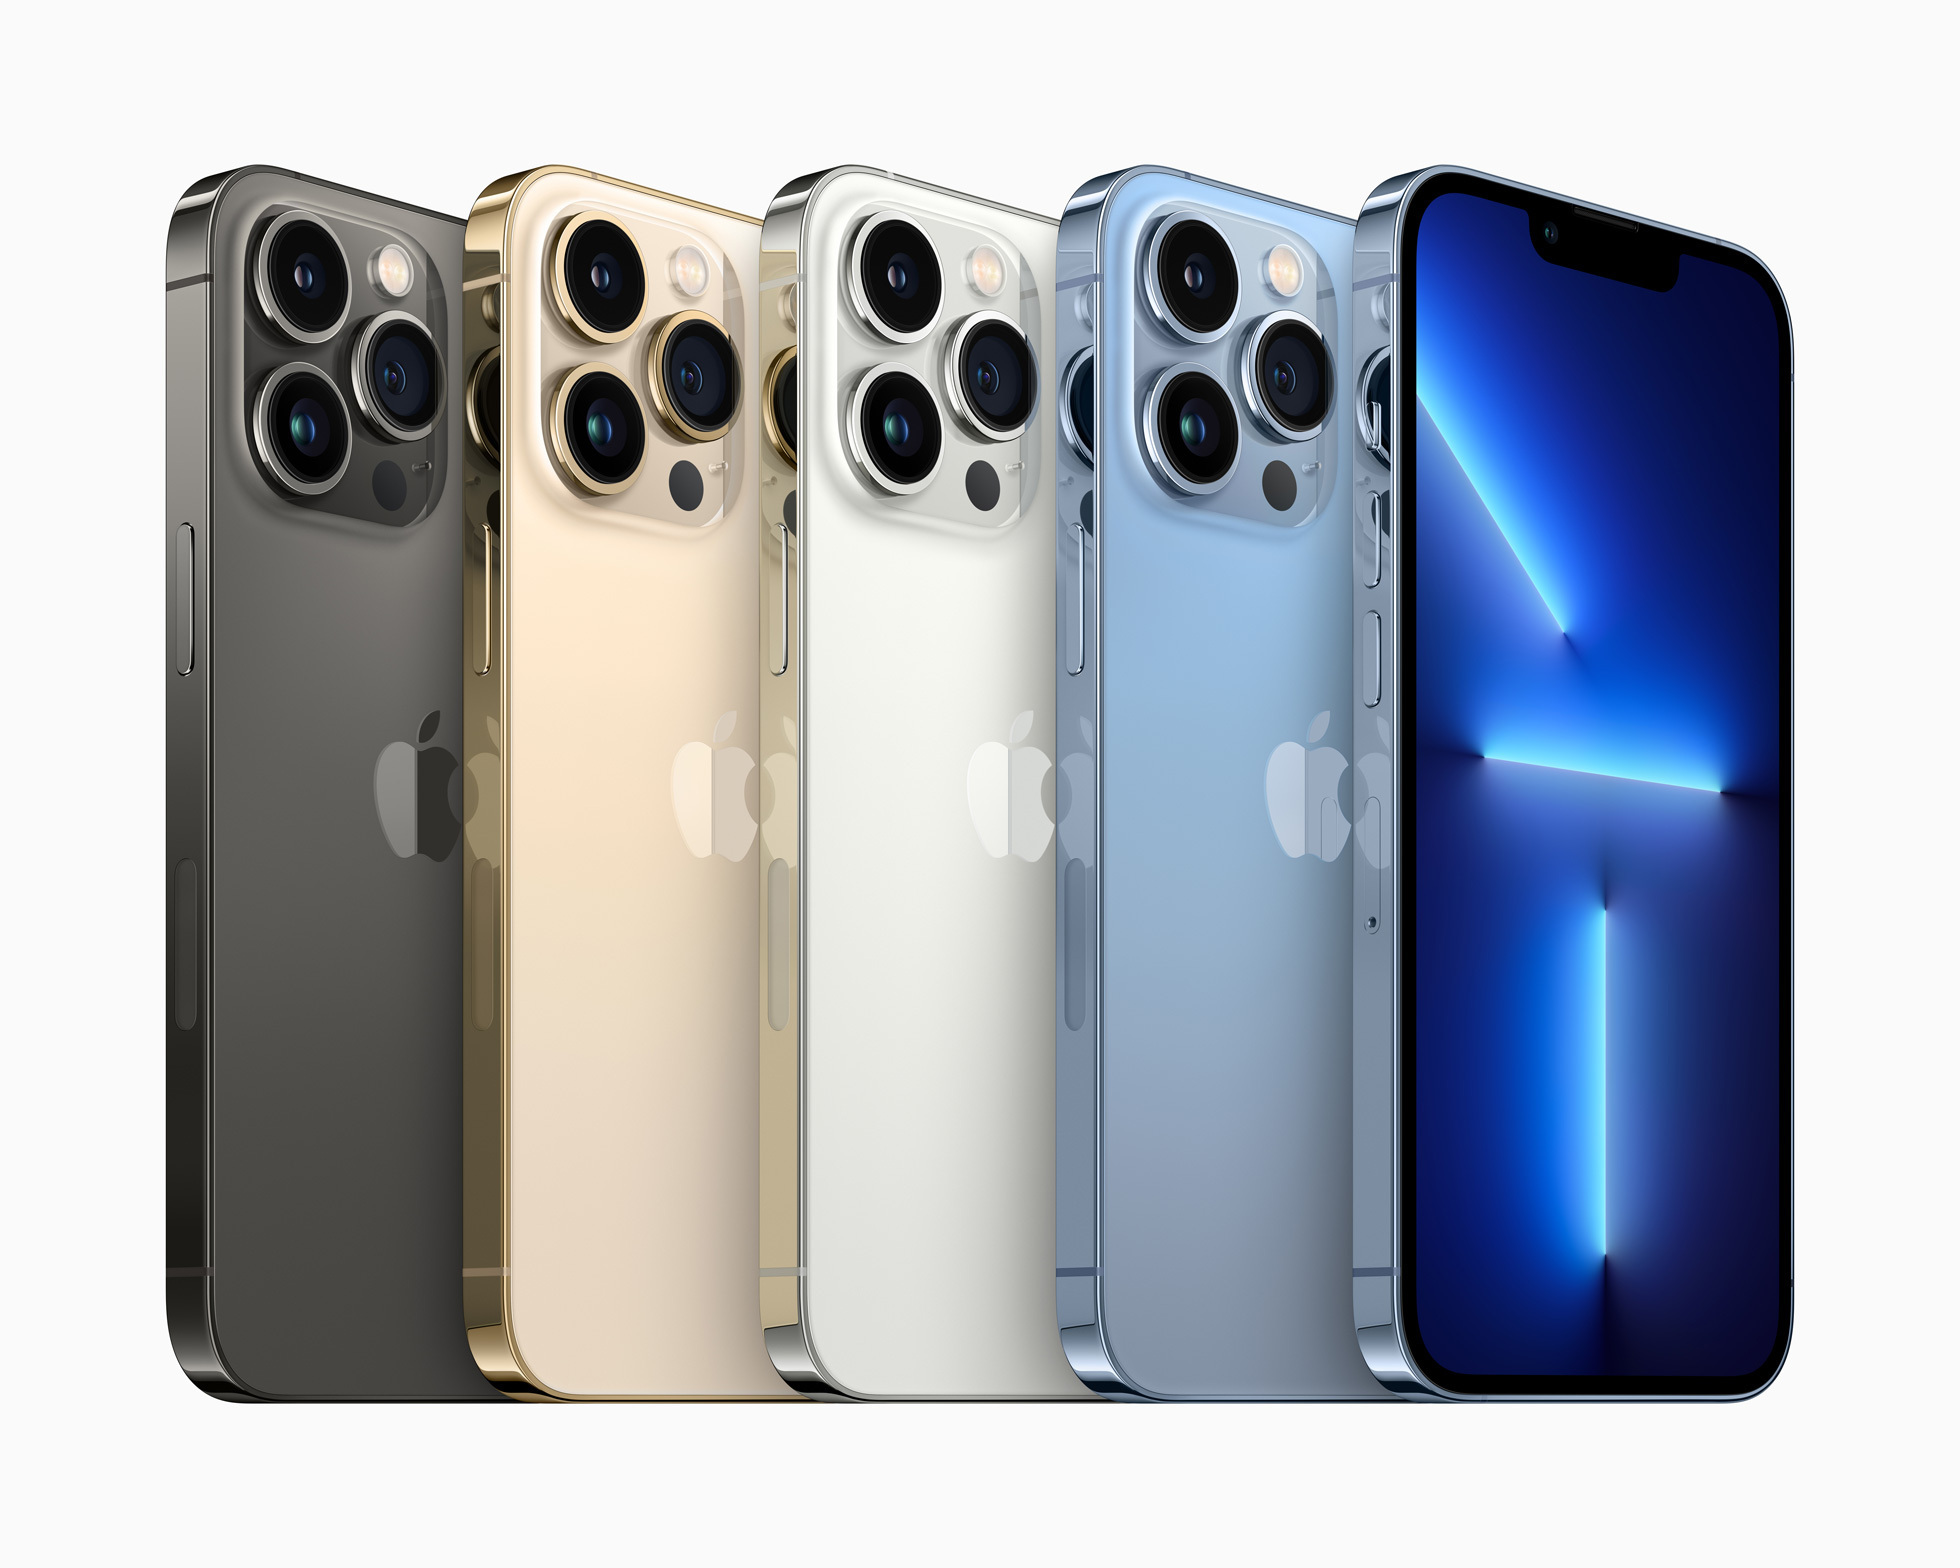 Los pedidos anticipados de los nuevos modelos de iPhone 13 y 13 Pro comenzarán pronto, con disponibilidad a partir del 24 de septiembre.